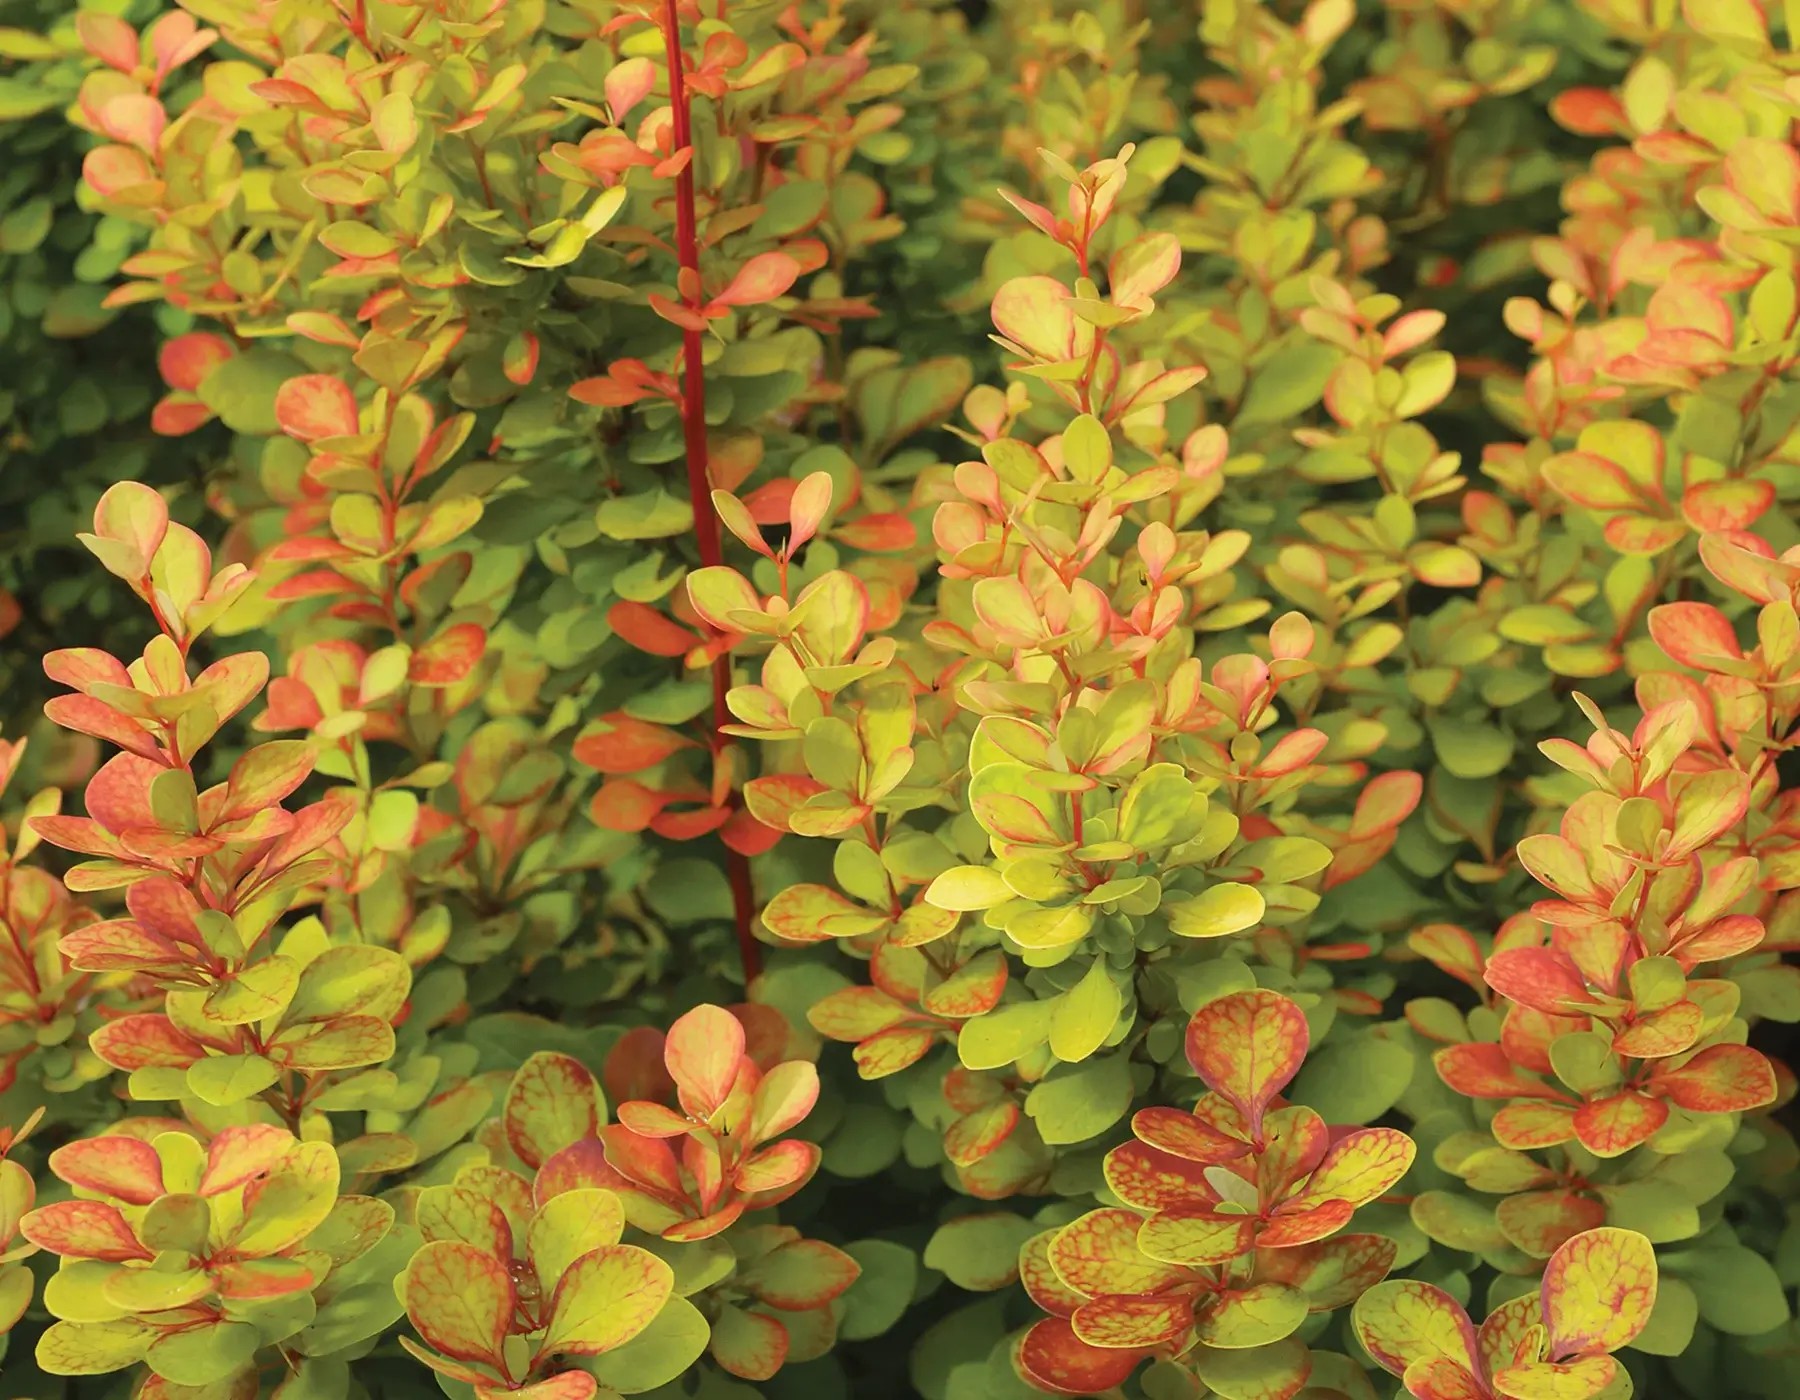 Raugerškis (Berberis) - tvirtas augalas, galintis užaugti iki 2 m aukščio, kurio lapai rudenį nusidažo gražiomis spalvomis